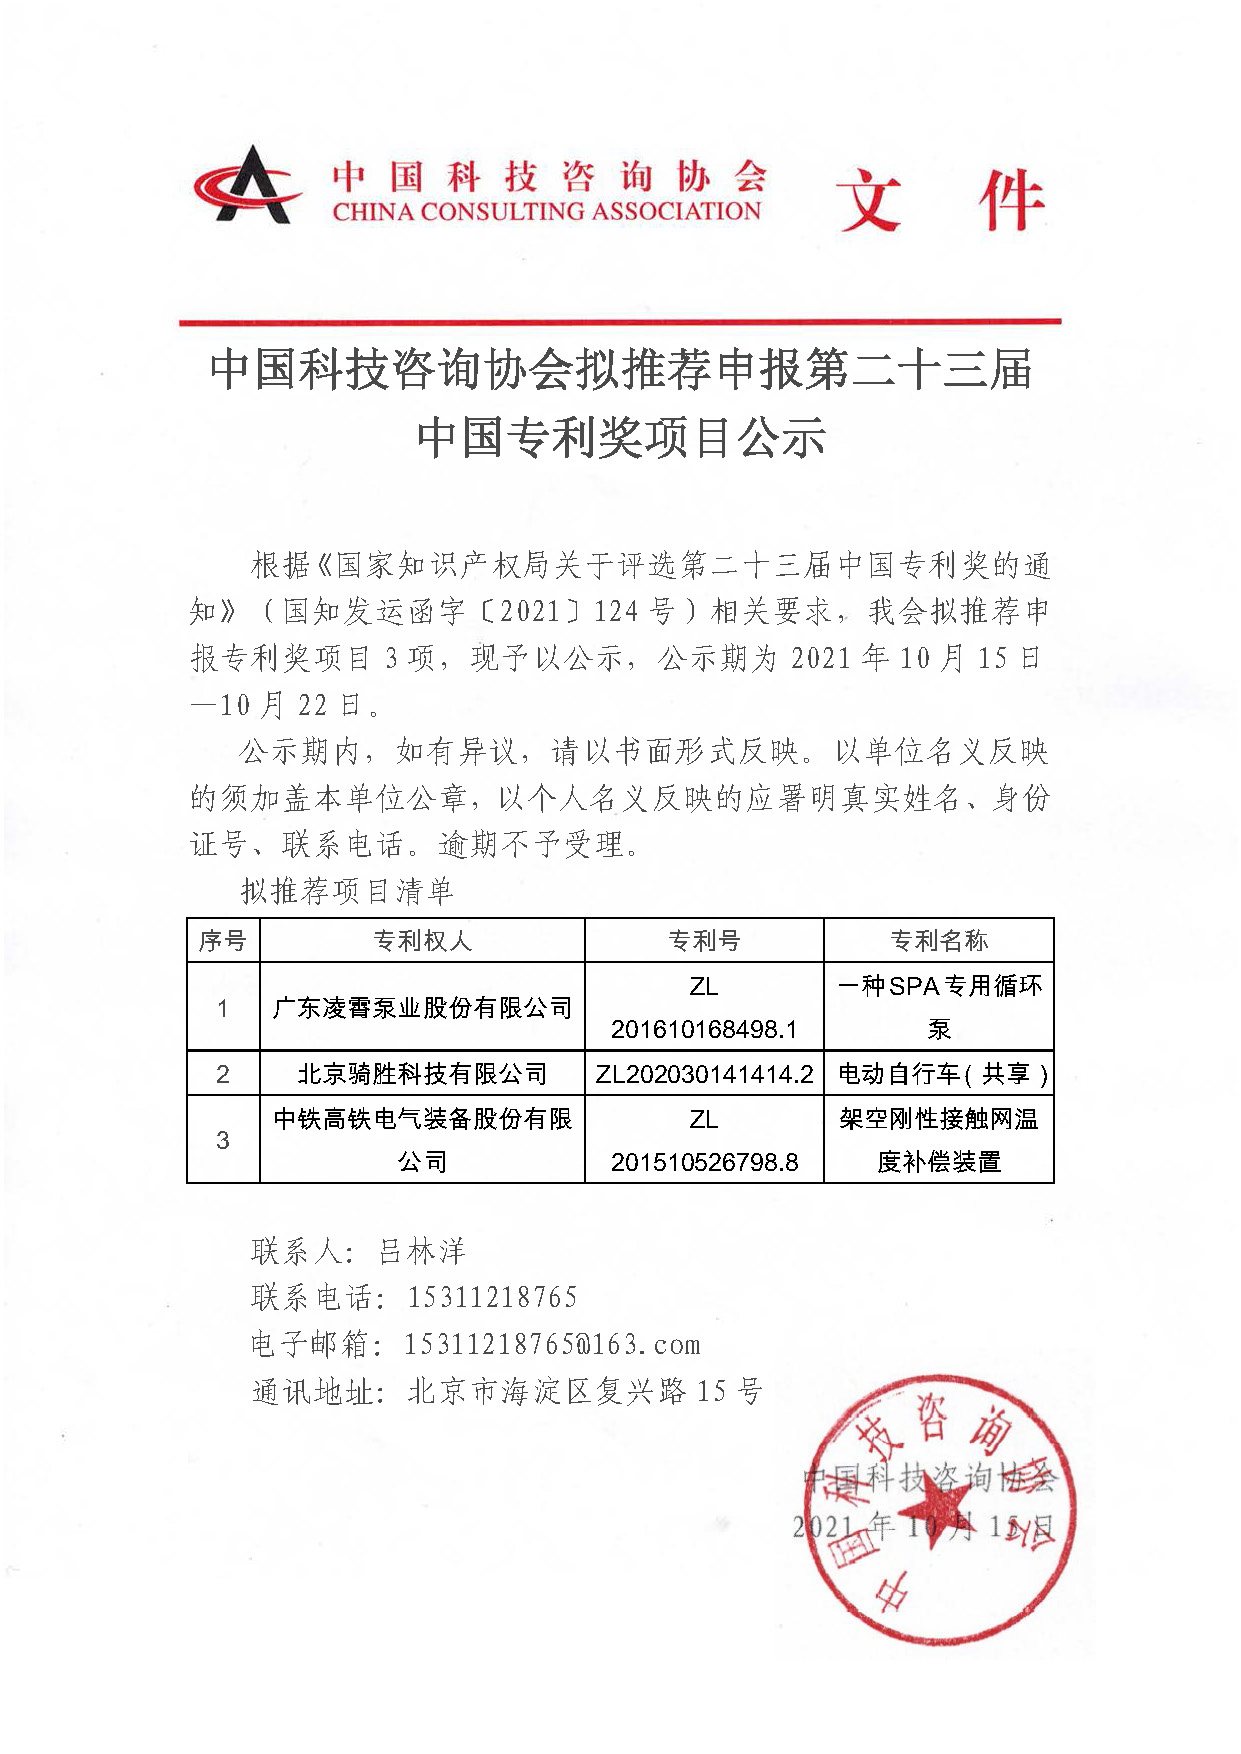 中国科技咨询协会拟推荐申报第二十三届中国专利奖项目公示.jpg